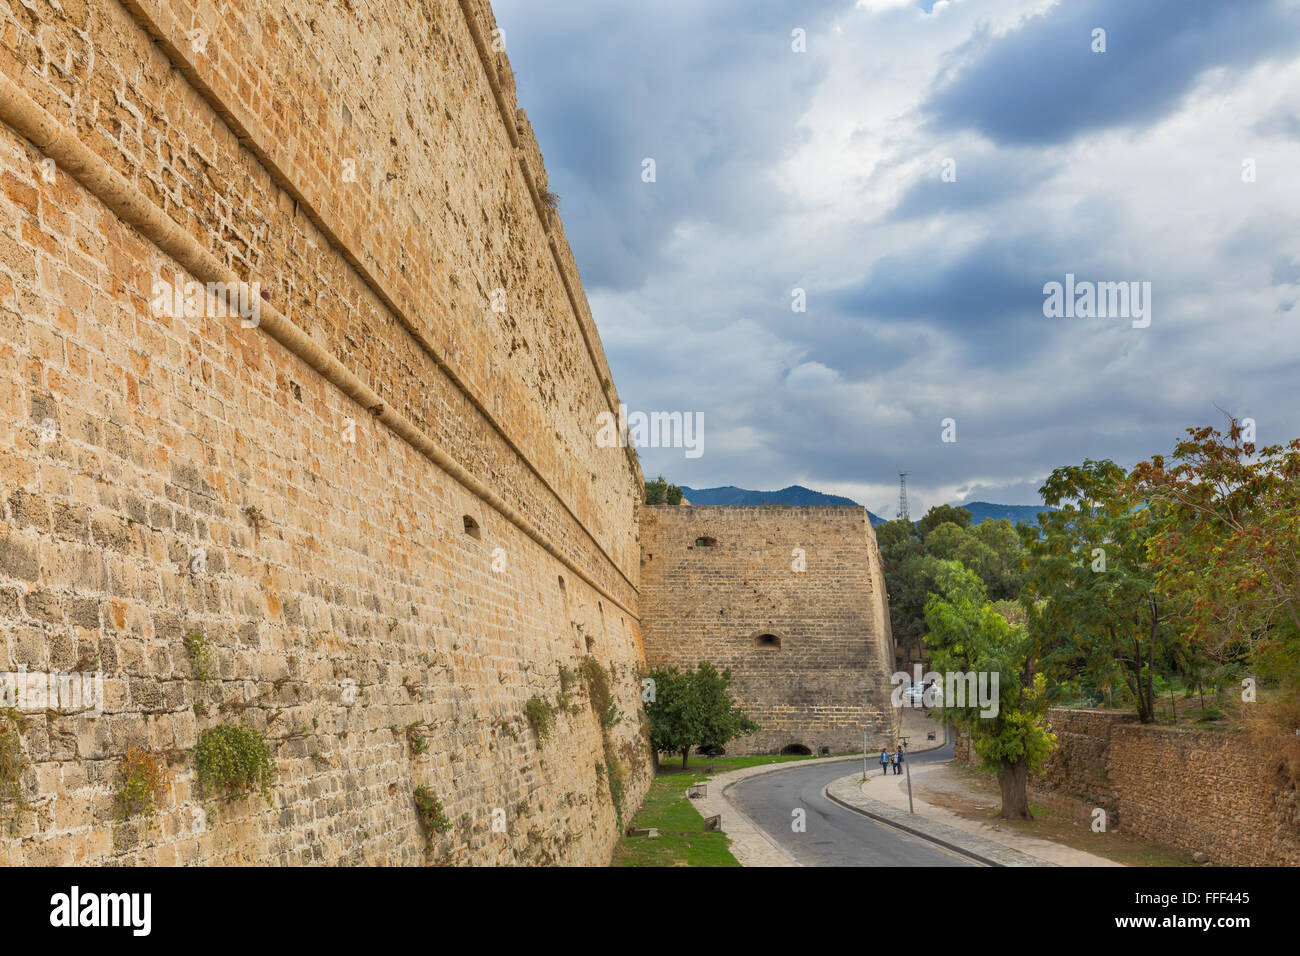 Il castello di Kyrenia (Girne Kalesi), Kyrenia, la parte settentrionale di Cipro Foto Stock